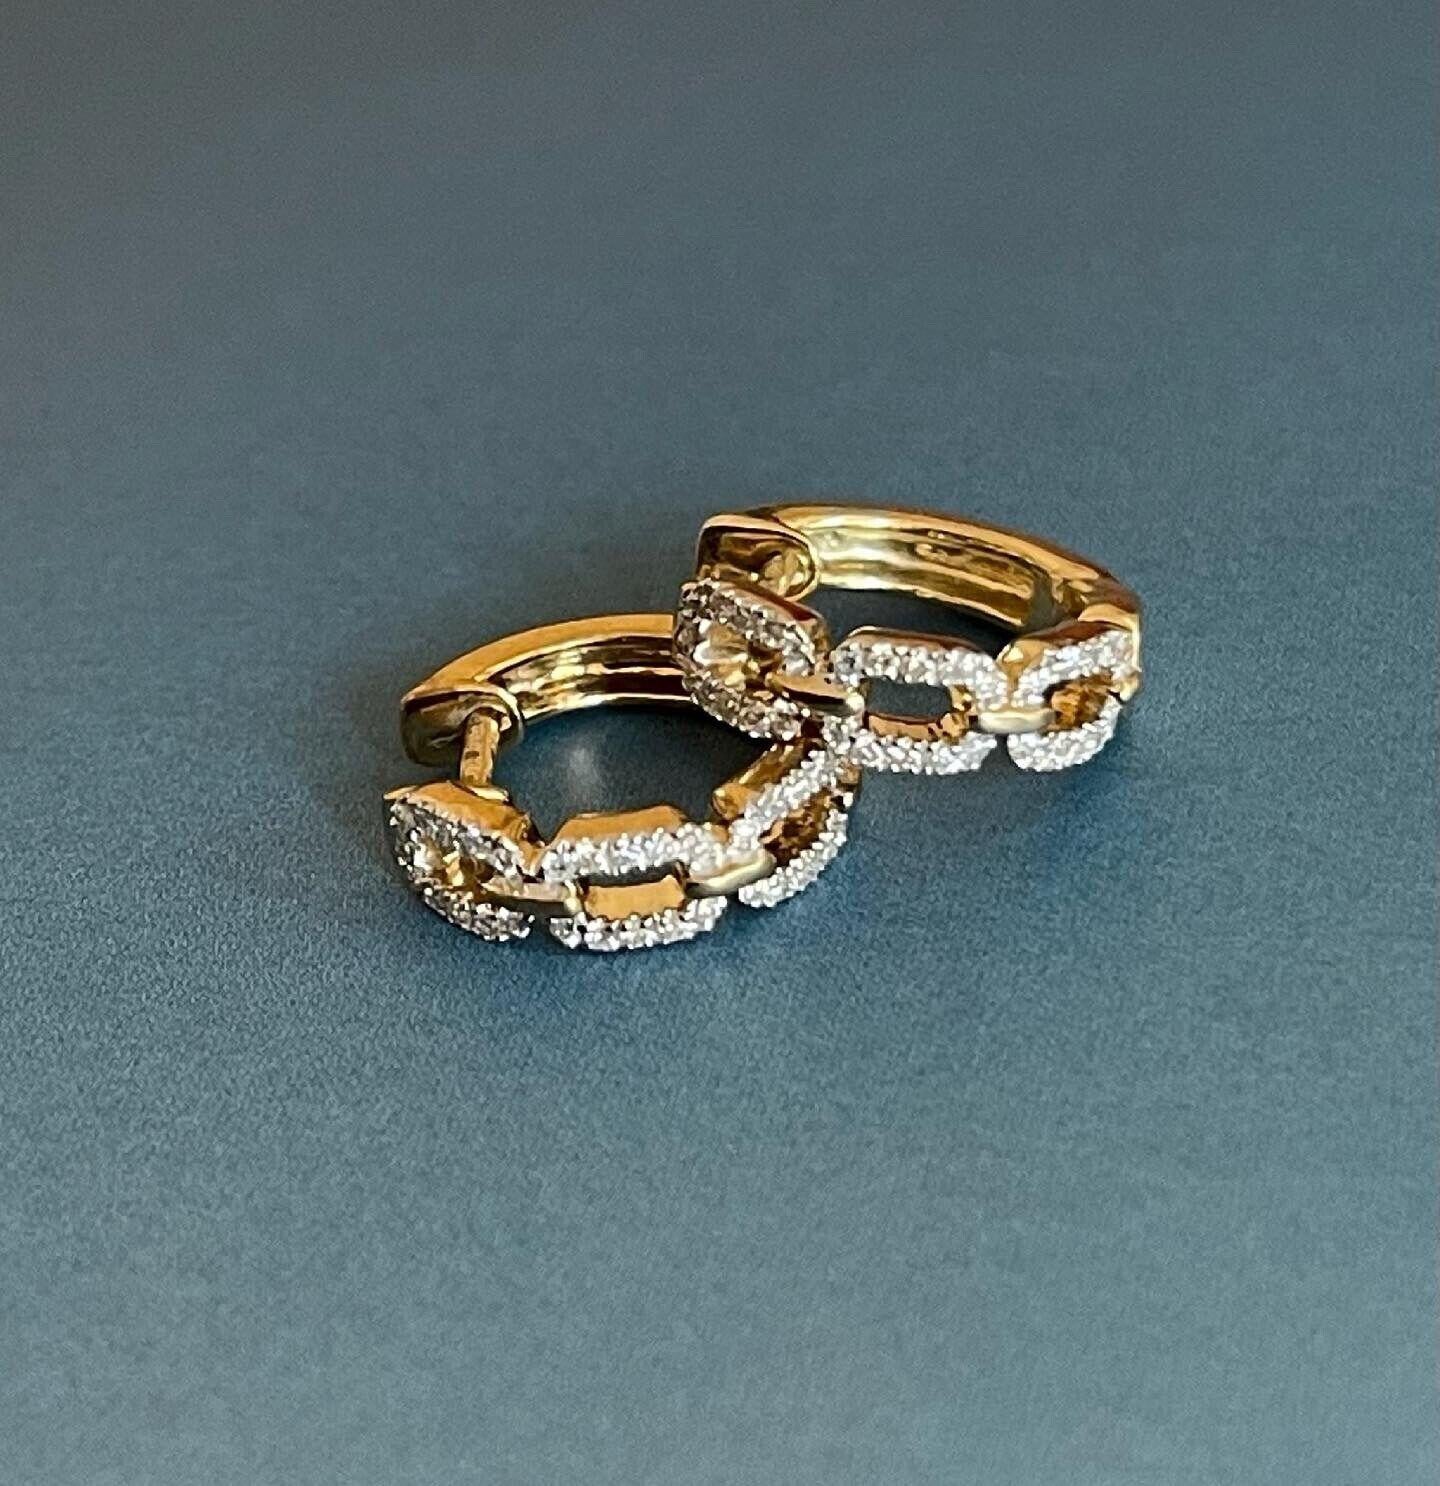 

Sehr elegante Gold-Diamant-Reifen-Ohrringe

Creolen im Huggy-Stil sind ein klassisches Schmuckstück, das immer in Mode ist und einen hohen Tragekomfort bietet.

Direkt aus dem Herzen von London Hatton Garden. Auch in Weißgold erhältlich

Das